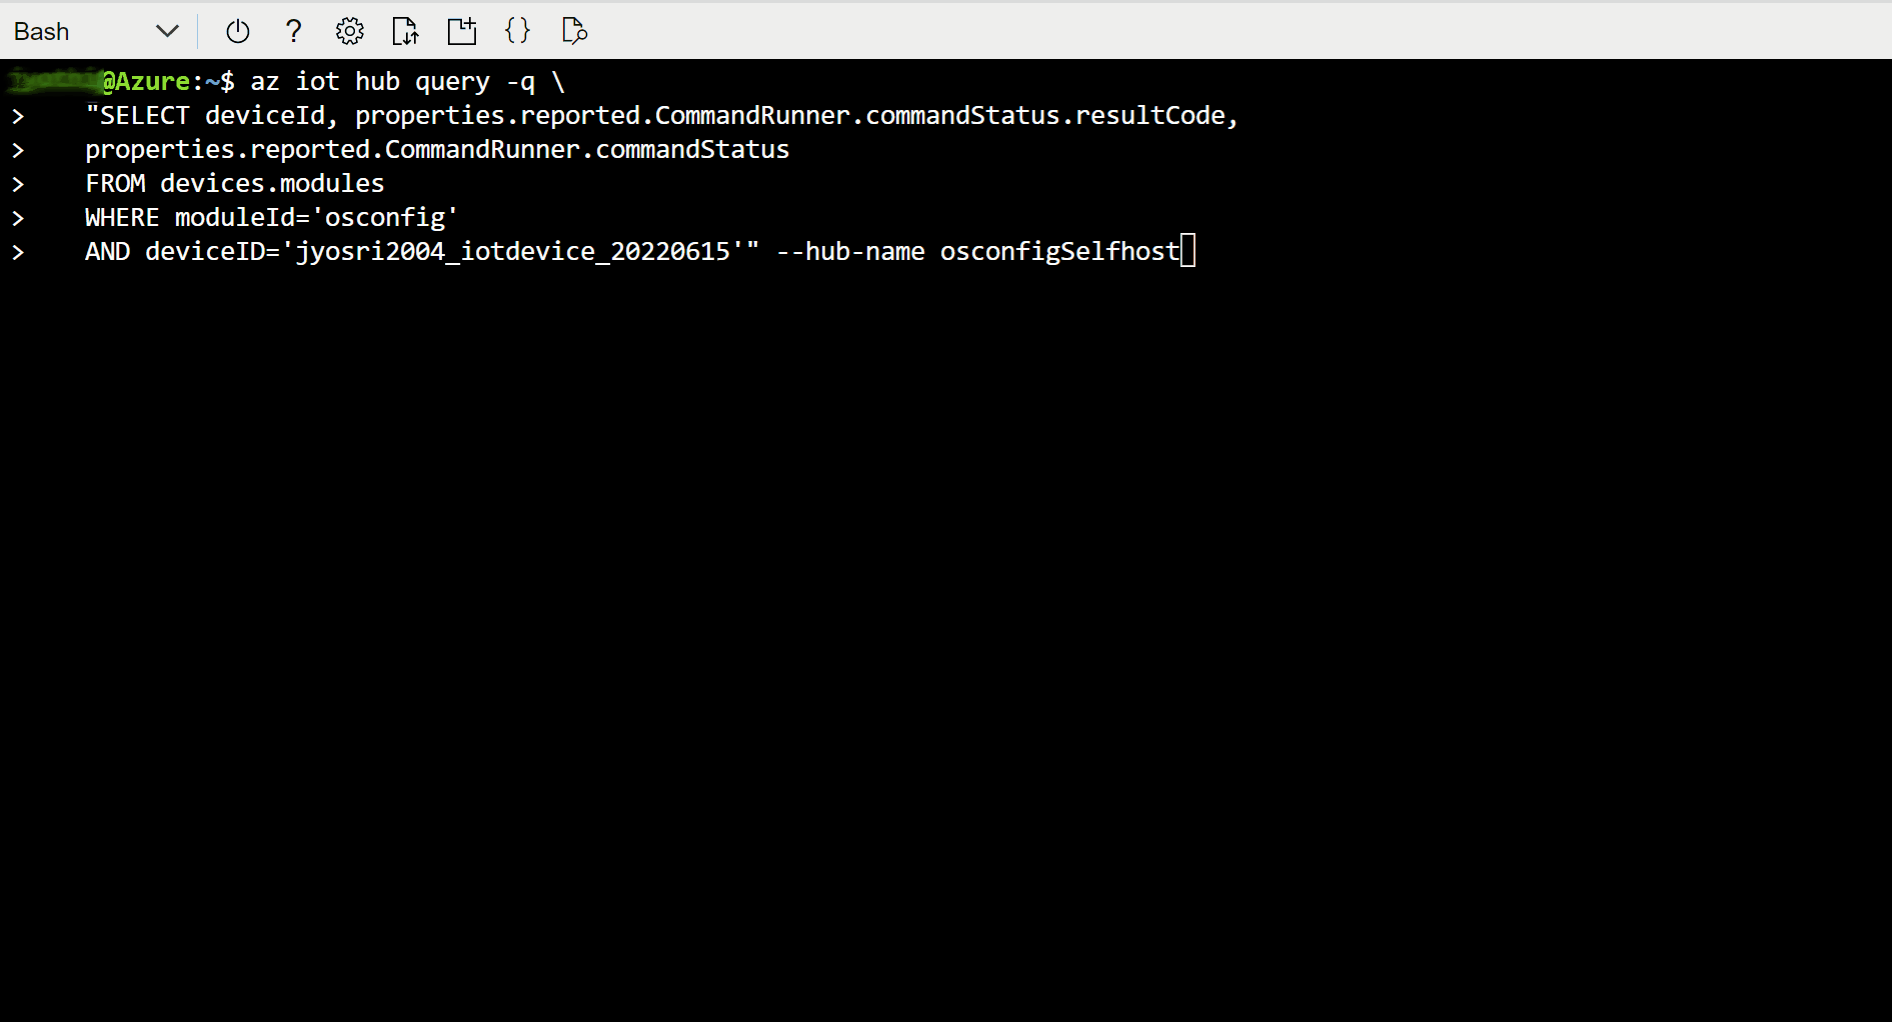 Captura de tela mostrando como verificar o status do comando de atualização do fuso horário usando bash.